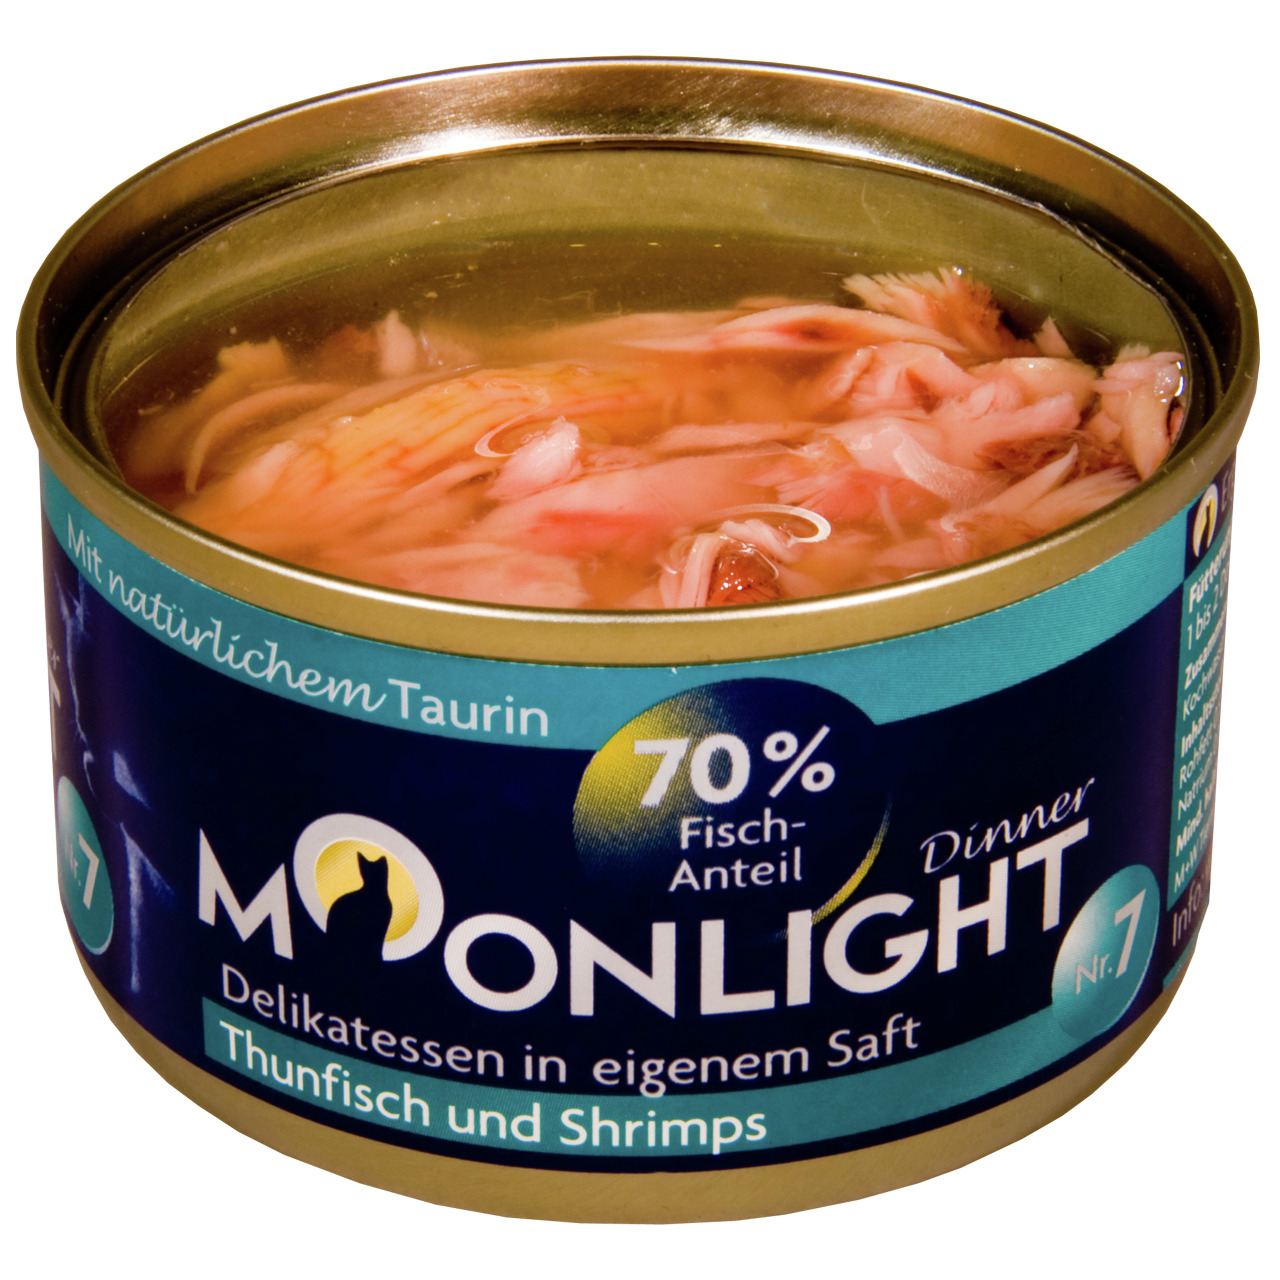 Moonlight Dinner Nr. 7 Thunfisch und Shrimps in eigenem Saft Katzen Nassfutter 80 g